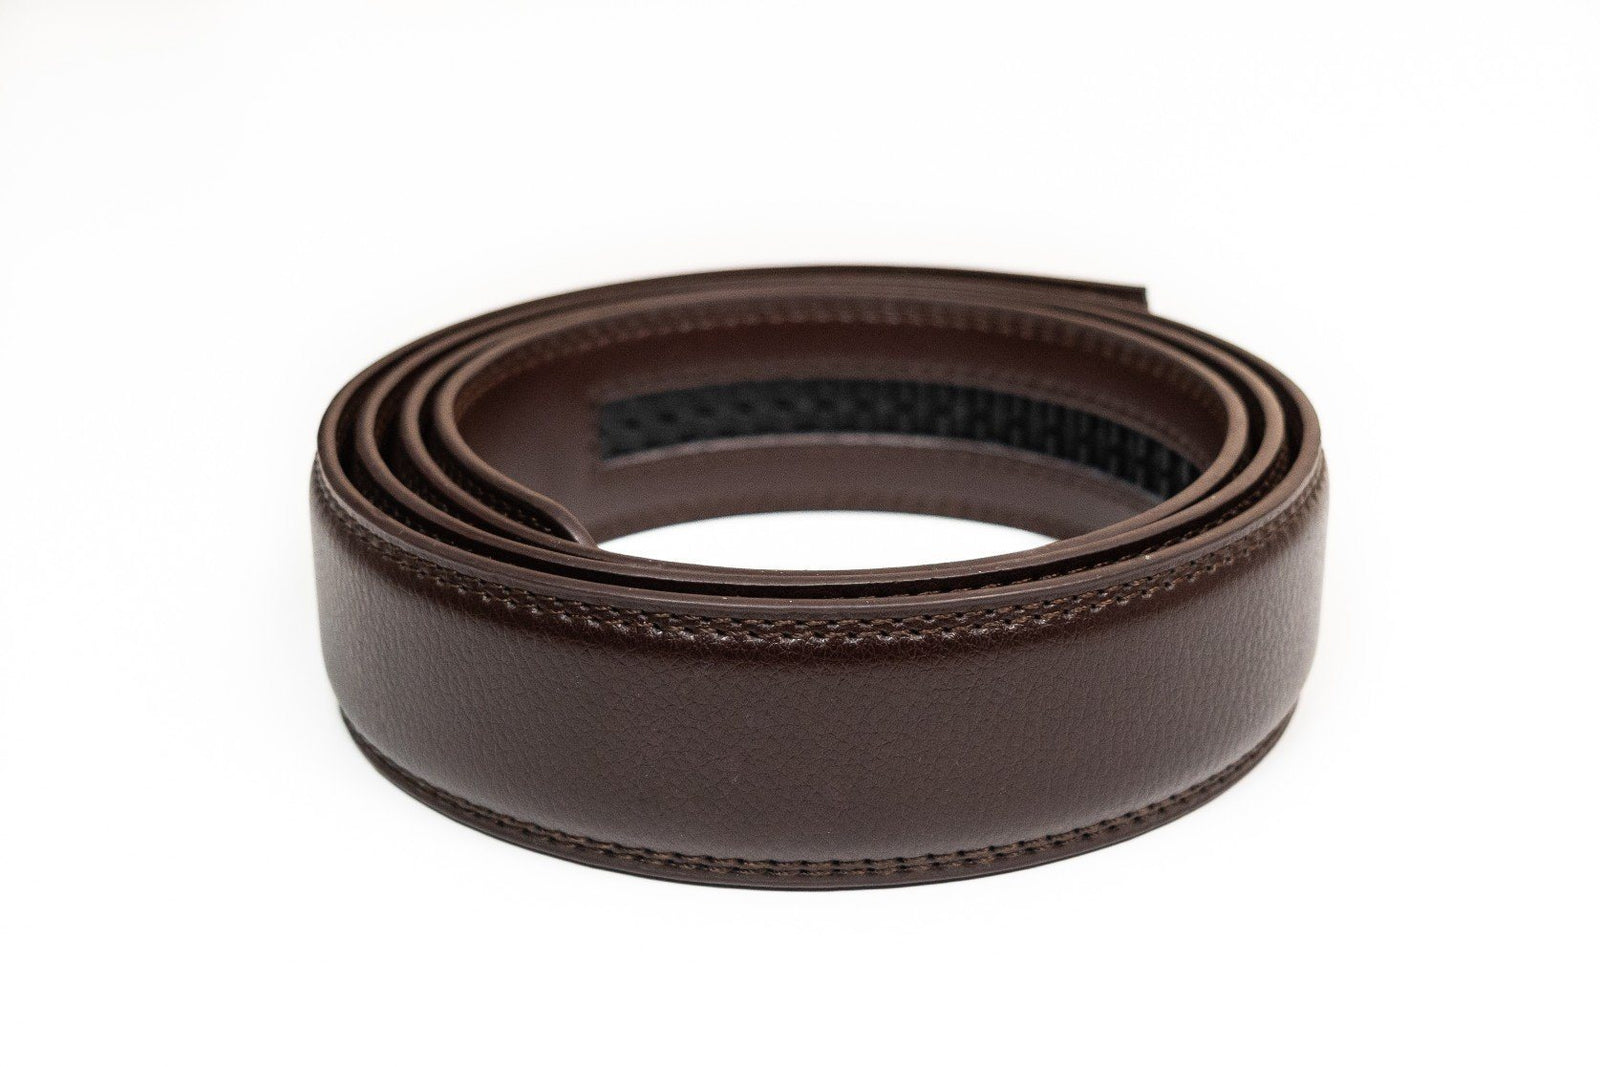 Men’s Ratchet Belts | Canvas or Leather Ratchet-Style Belts - Tough Apparel